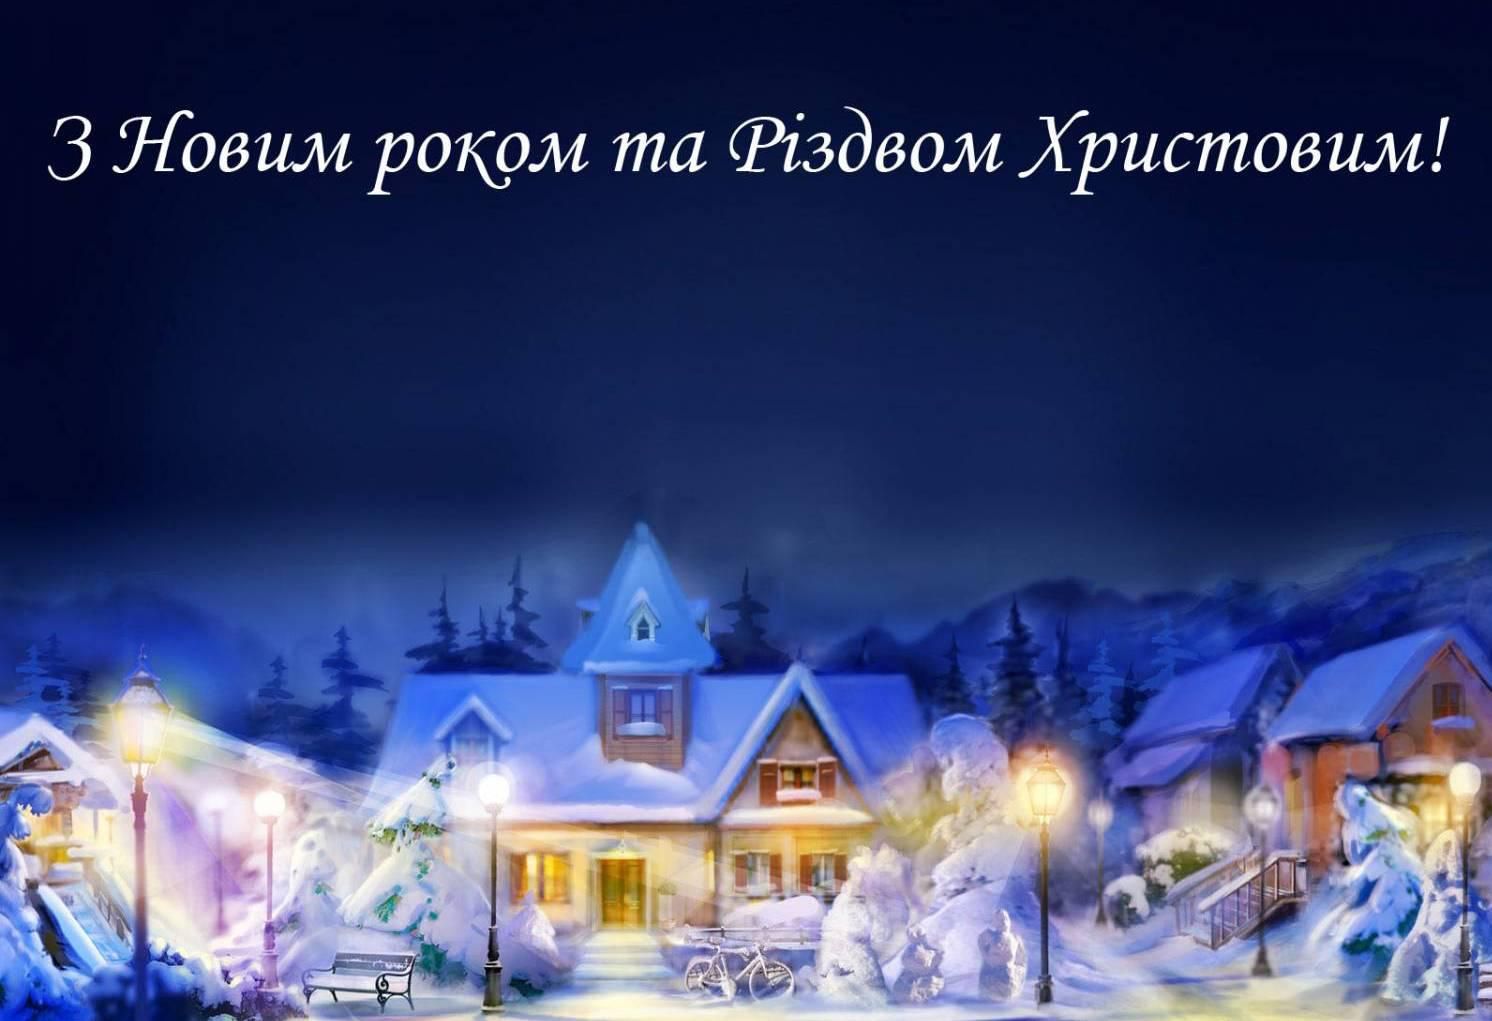 Привітання з Новим роком та Різдвом Христовим своїми словами
